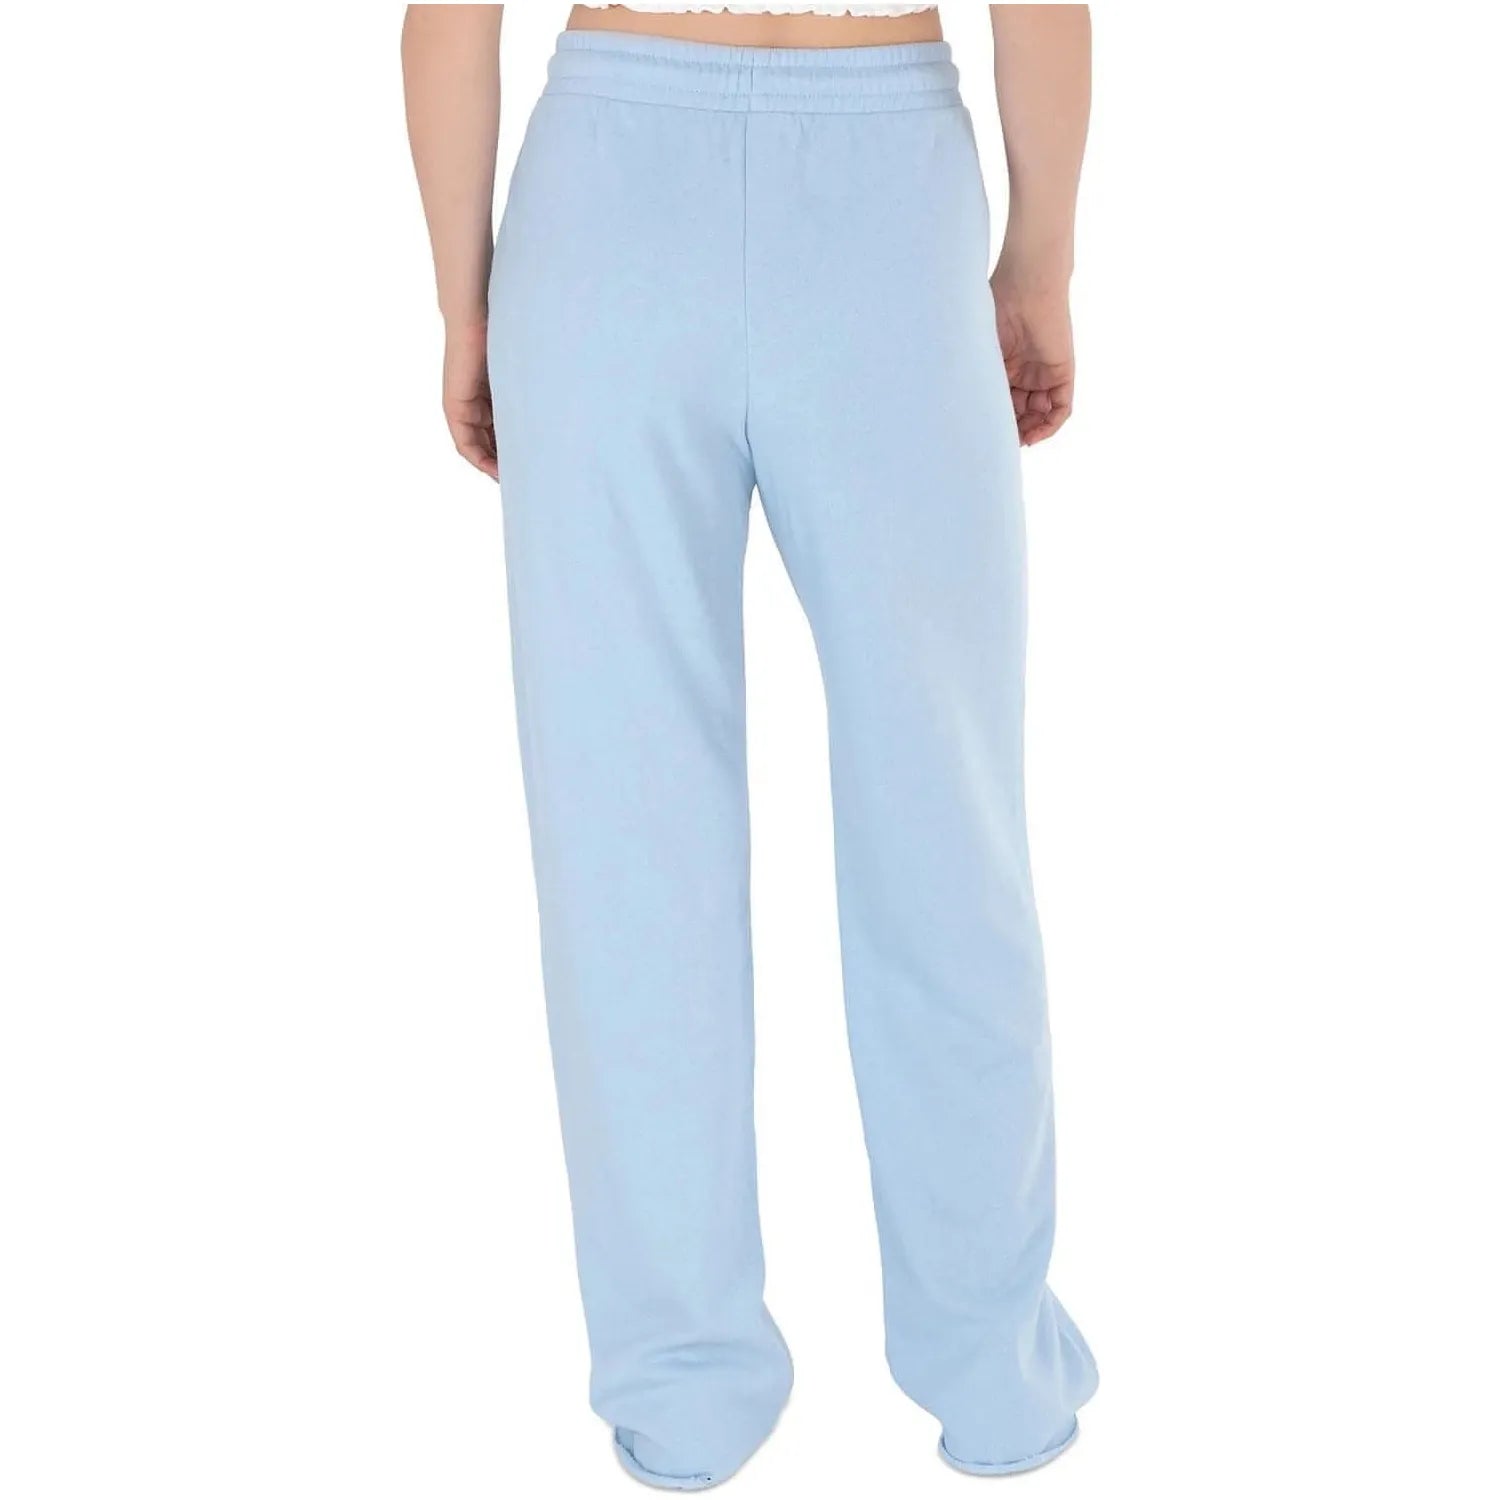 Hippie Rose Juniors Raw-Hem Sweatpants, Blue, Size: S - Brandat Outlet